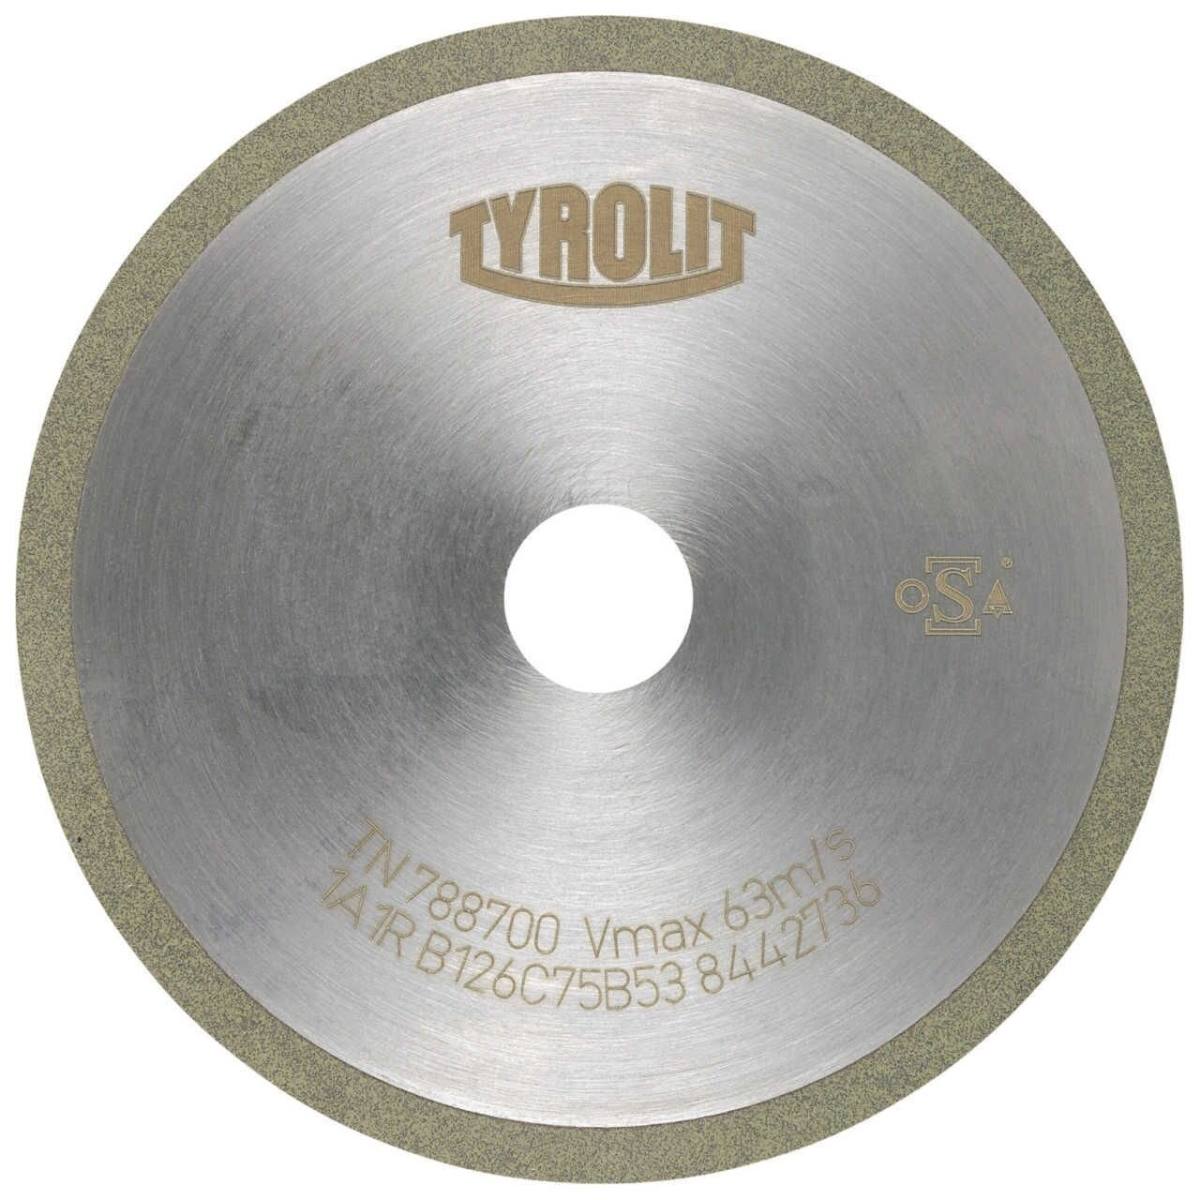 TYROLIT Utensili rotativi da taglio DxDxH 200x1,2x20 Per metallo duro, forma: 1A1R (disco da taglio con rotella continua), Art. 858531